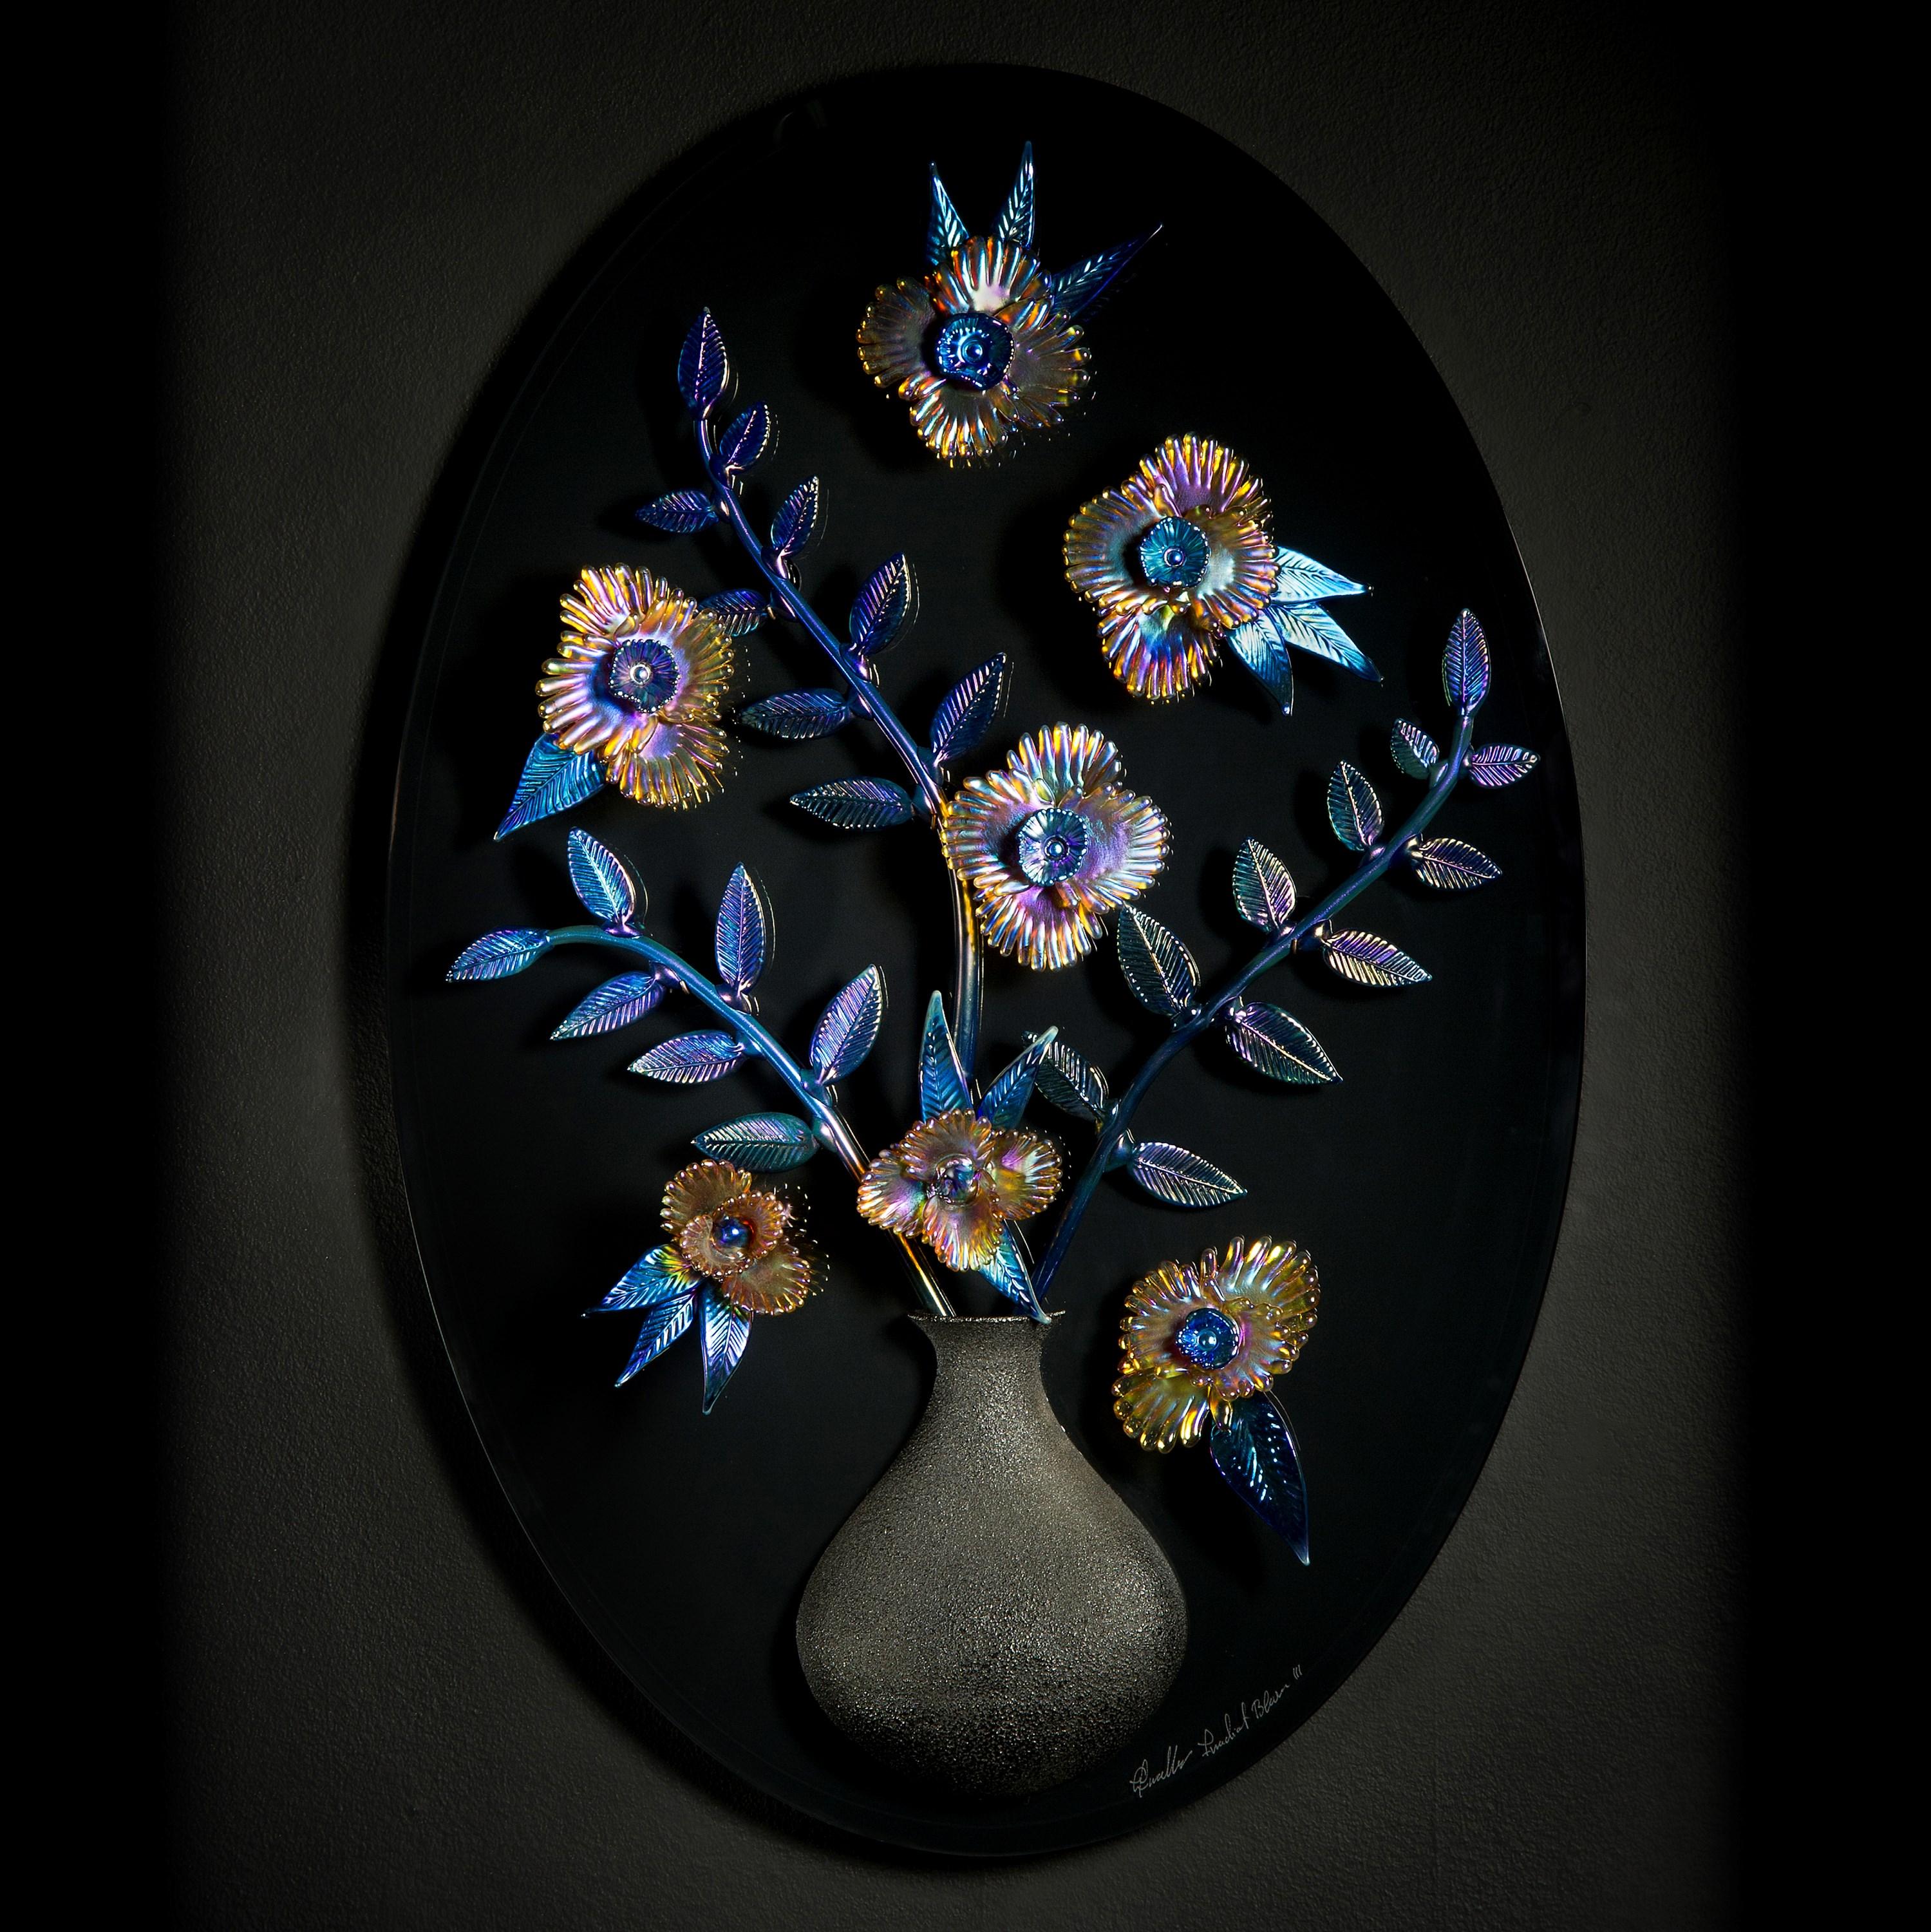 Irradiant Bloom III ist ein ovales skulpturales Wandkunstwerk des britischen Künstlers und Gewinners der Serie Blown Away II, Elliot Walker. Das Kunstwerk zeigt handgeschnitzte, schillernde Blumen mit einer halbierten schwarzen Vase, die auf der